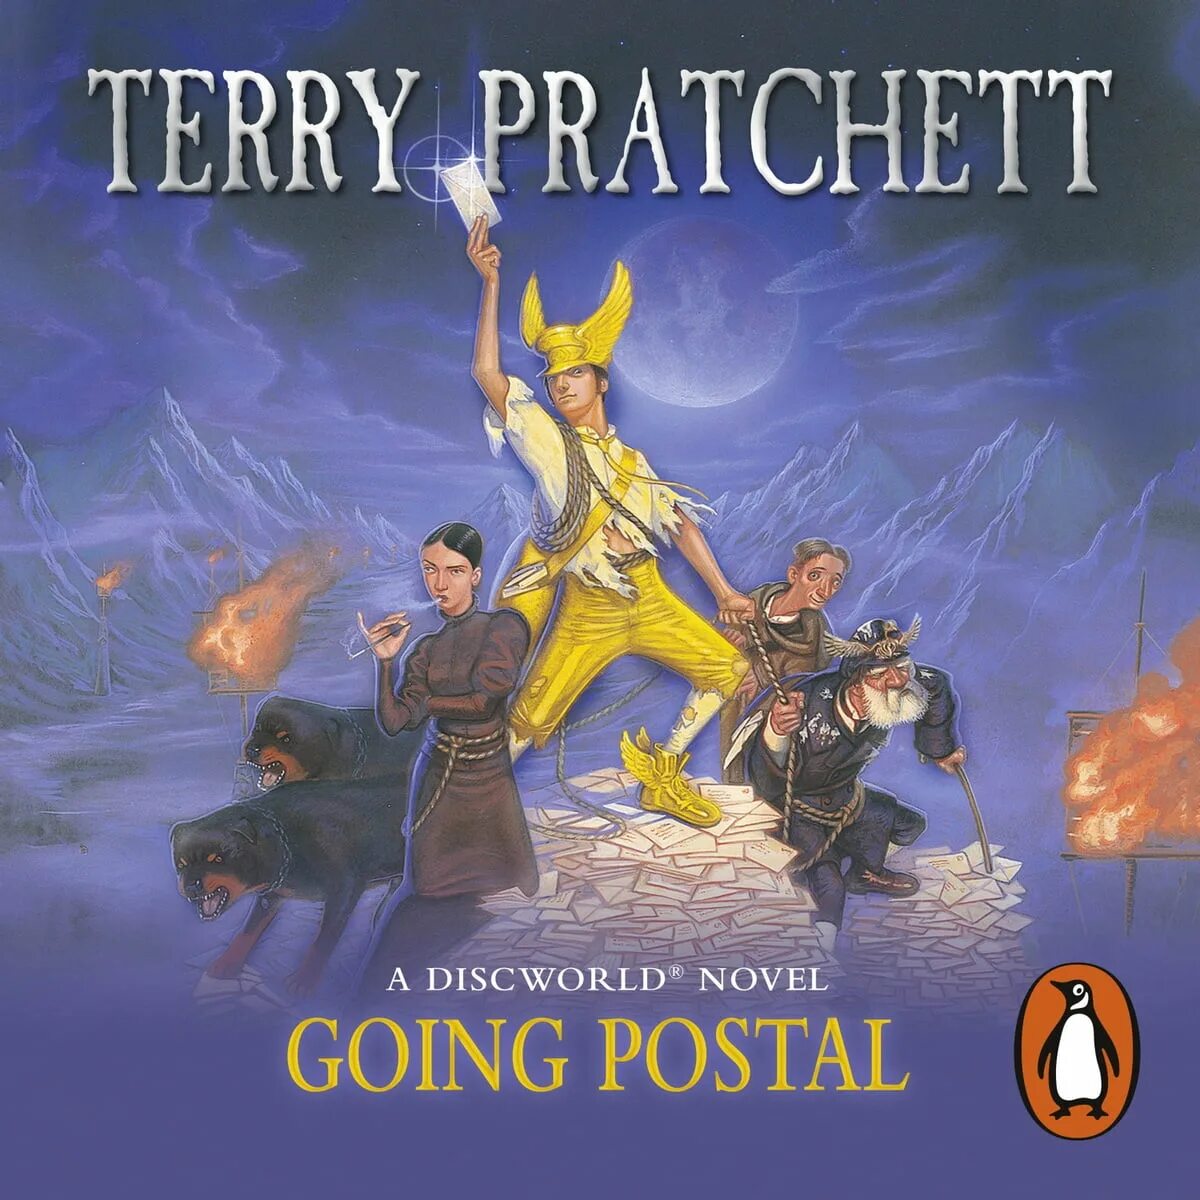 Терри пратчетт аудиокнига клюквин слушать. Опочтарение книга Терри Пратчетта. Аудиокнига Терри Пратчетт Опочтарение. Терри Пратчетт Опочтарение обложка. Terry Pratchett "going Postal".